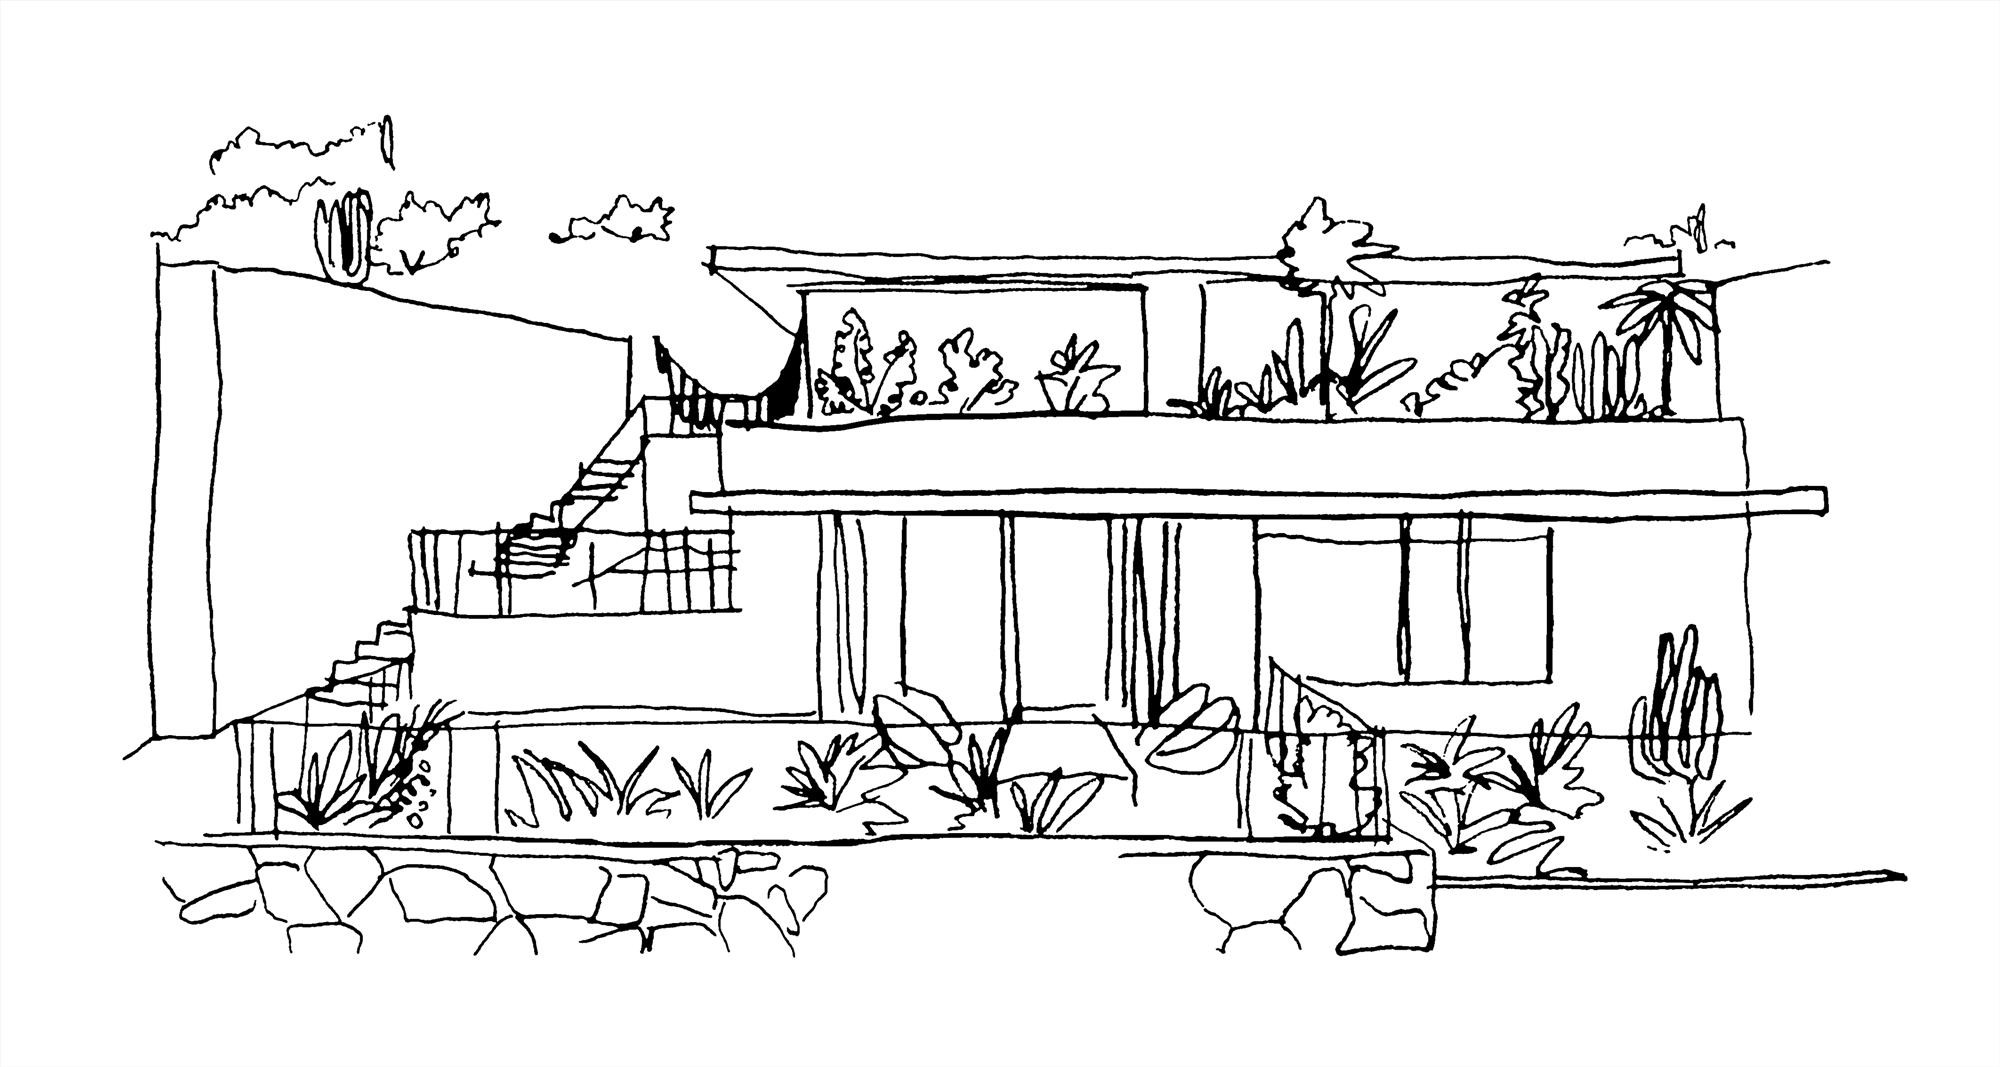 The Casa Casitas sketch